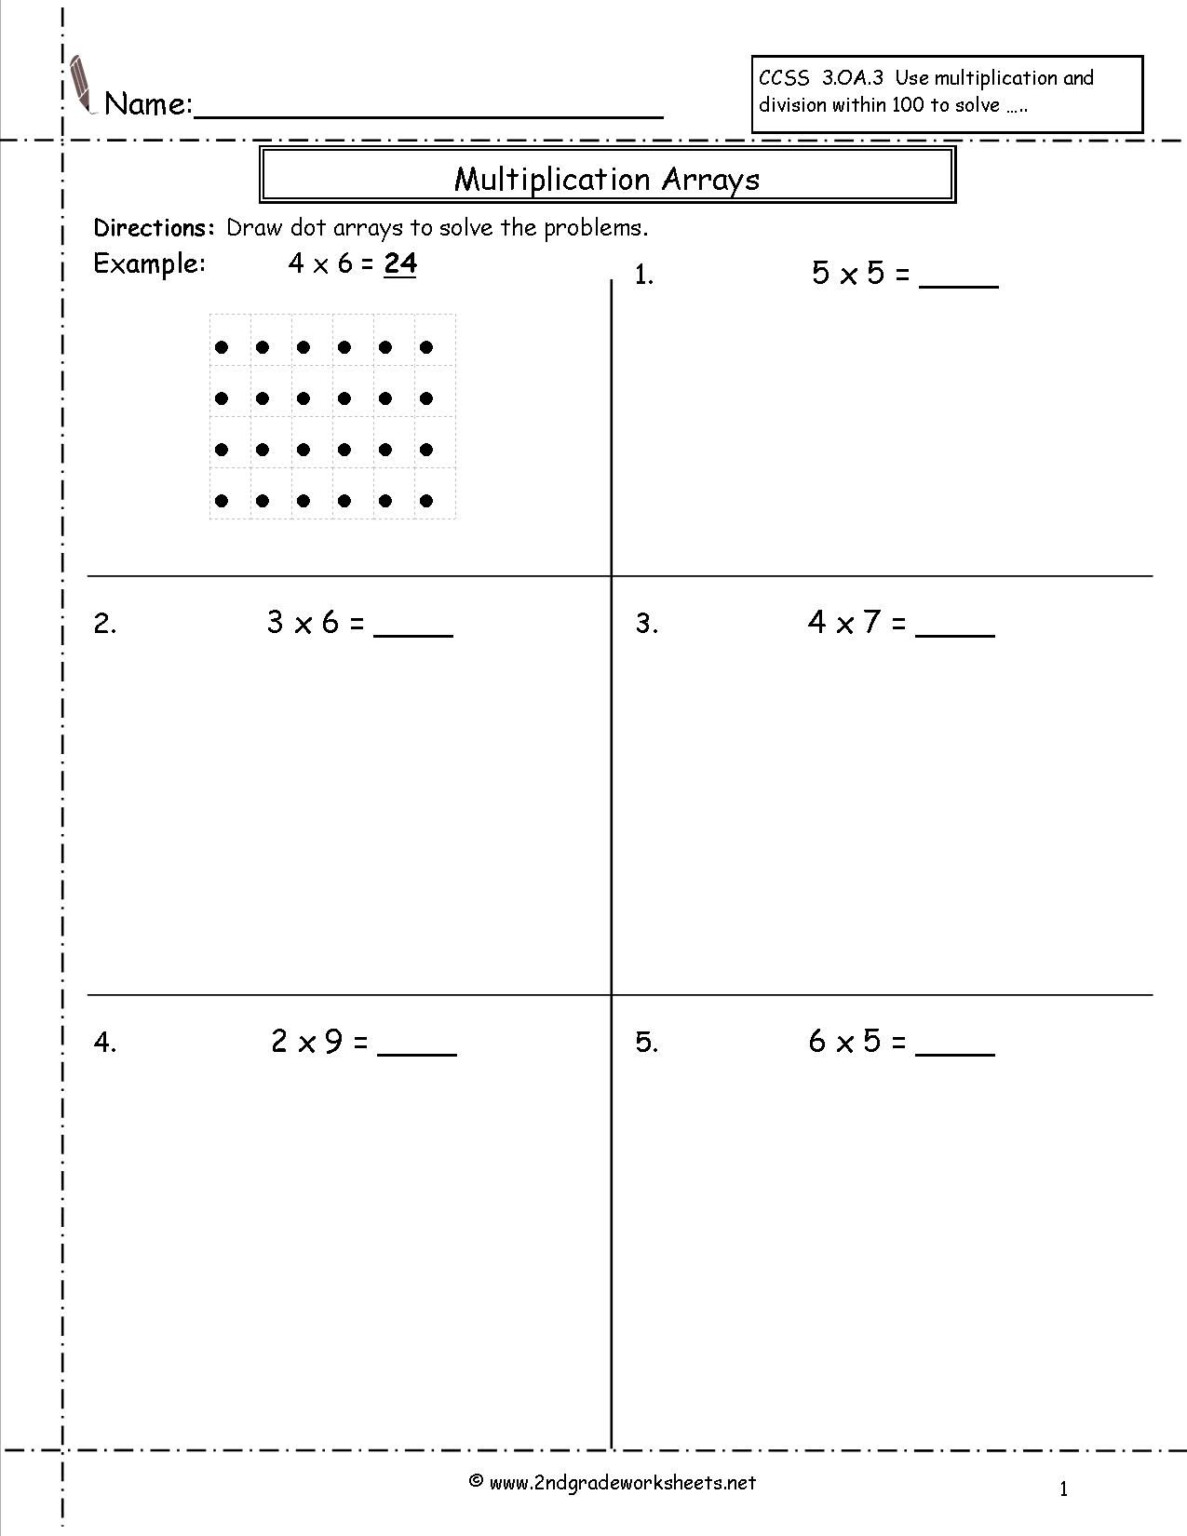 multiplication-arrays-worksheets-array-worksheets